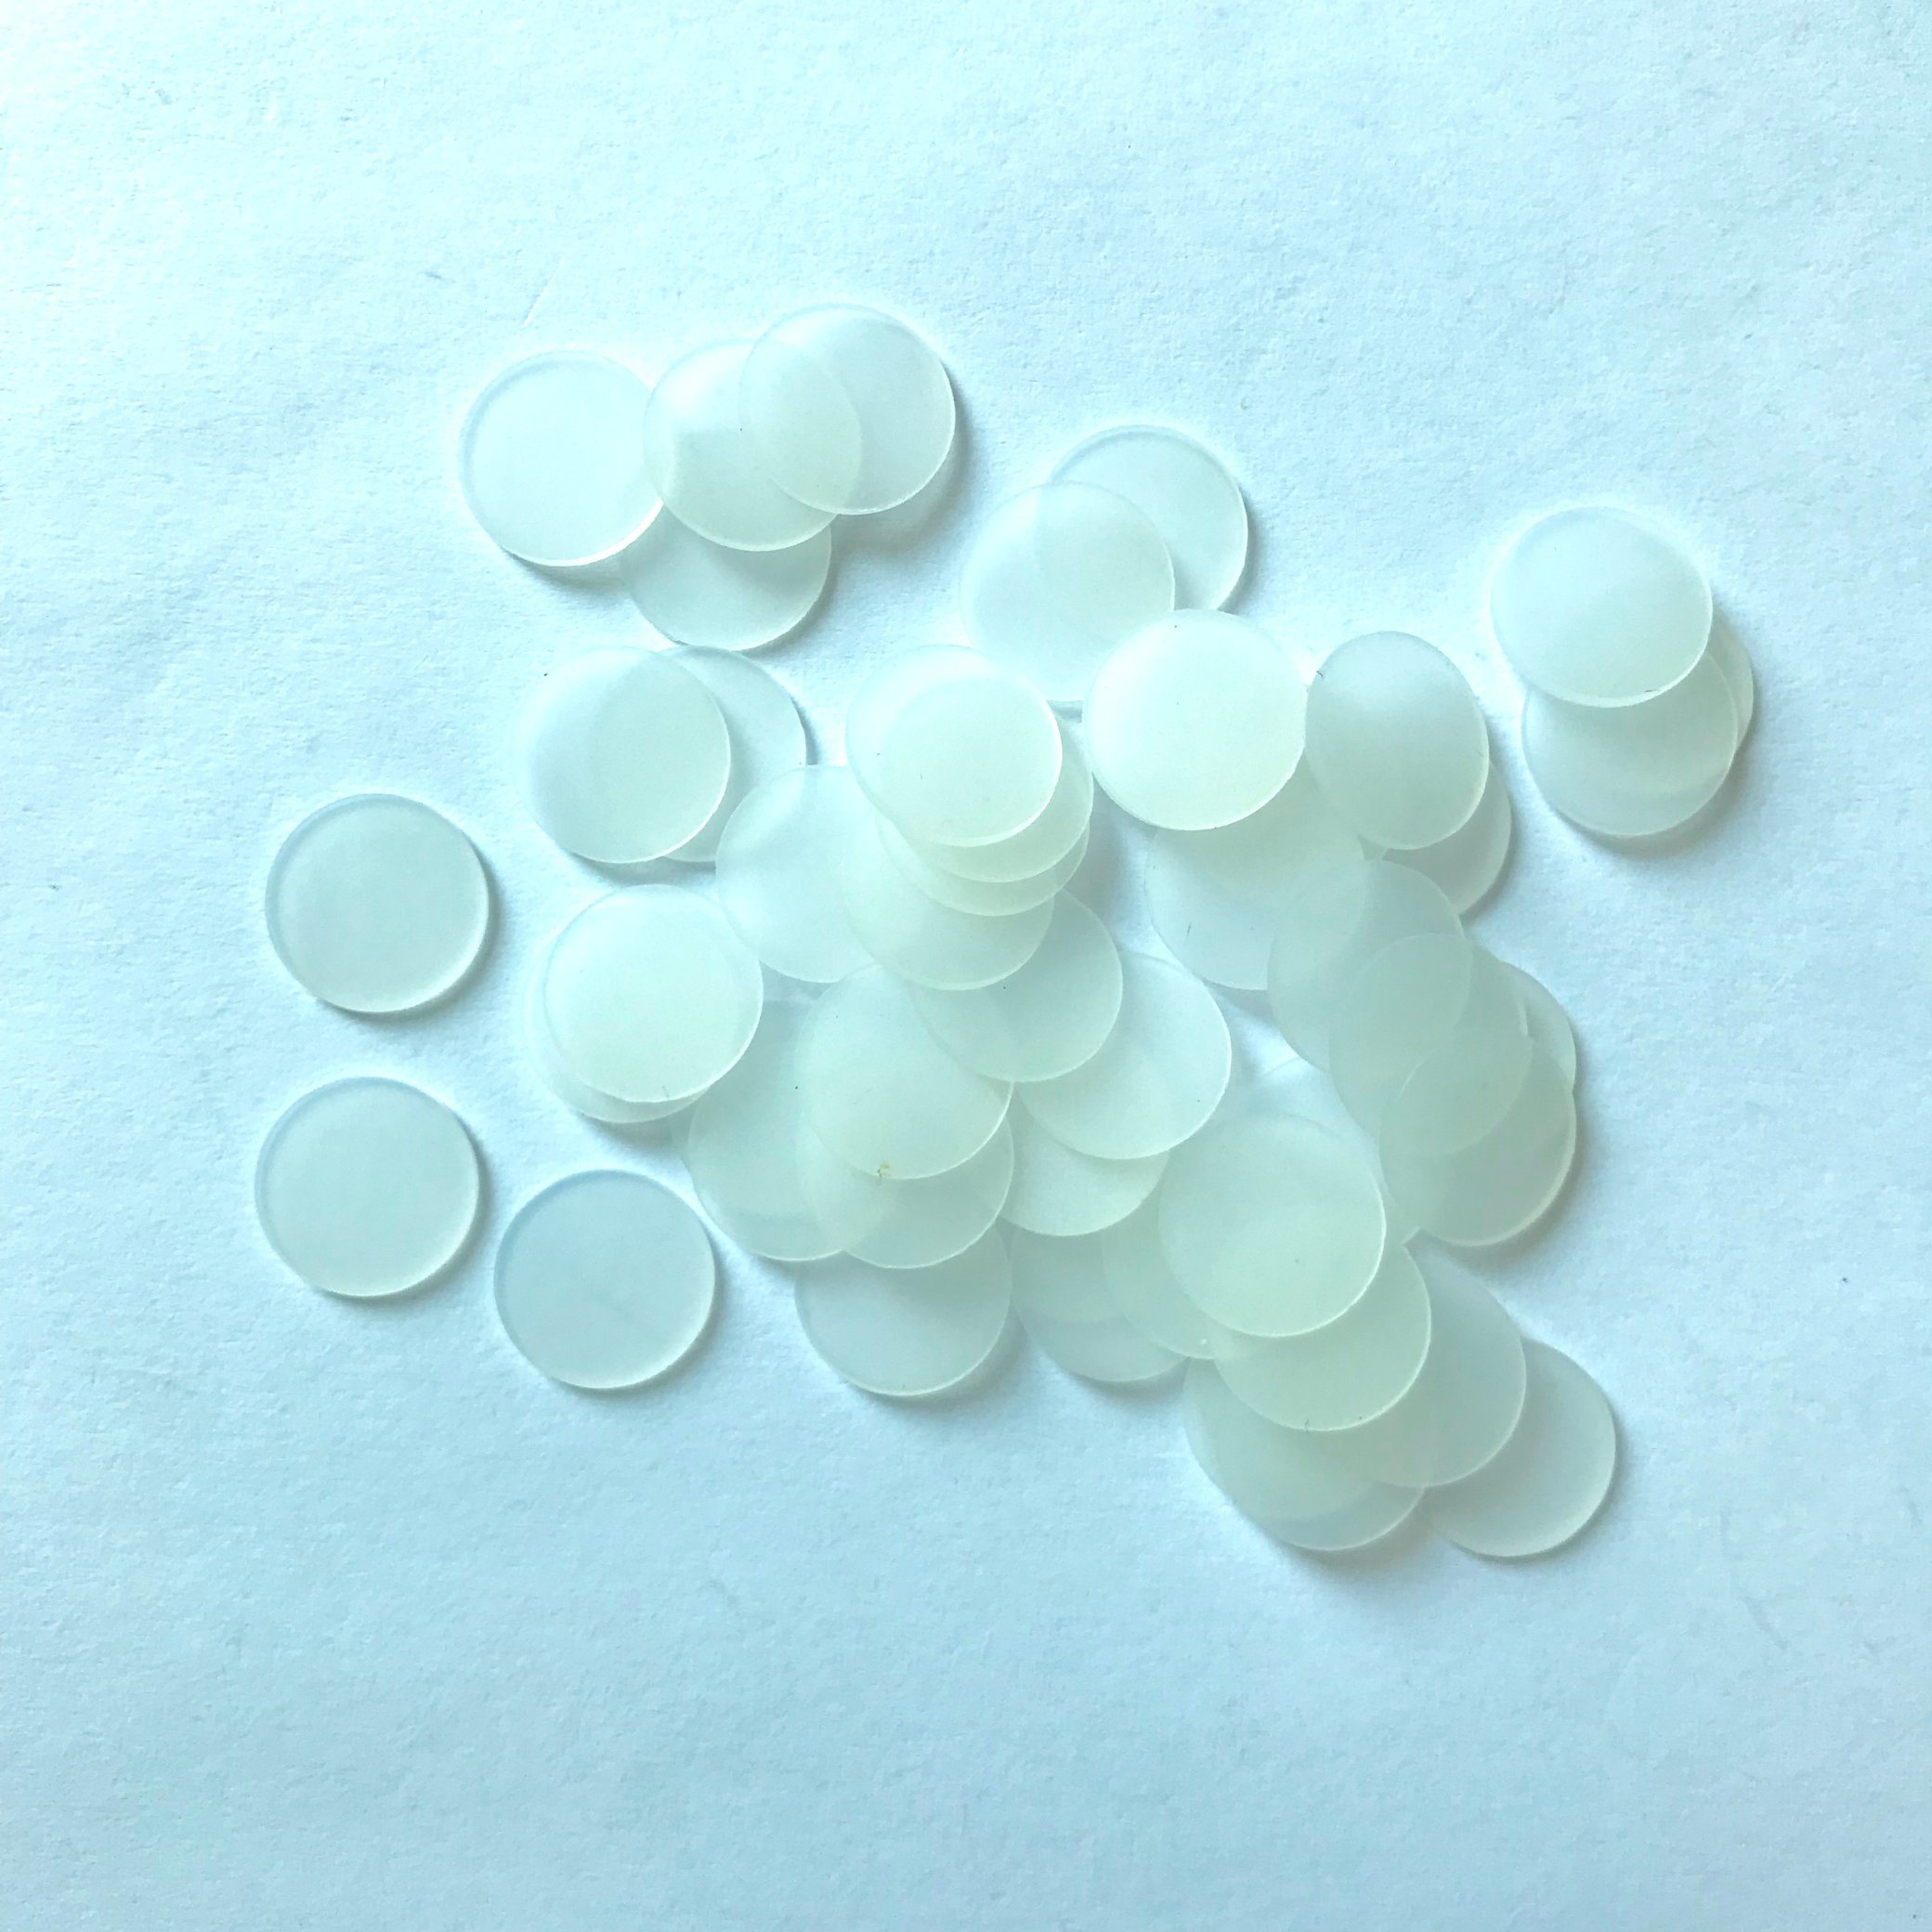 Clear Thin FDA Vmq/Sil Rubber Gasket